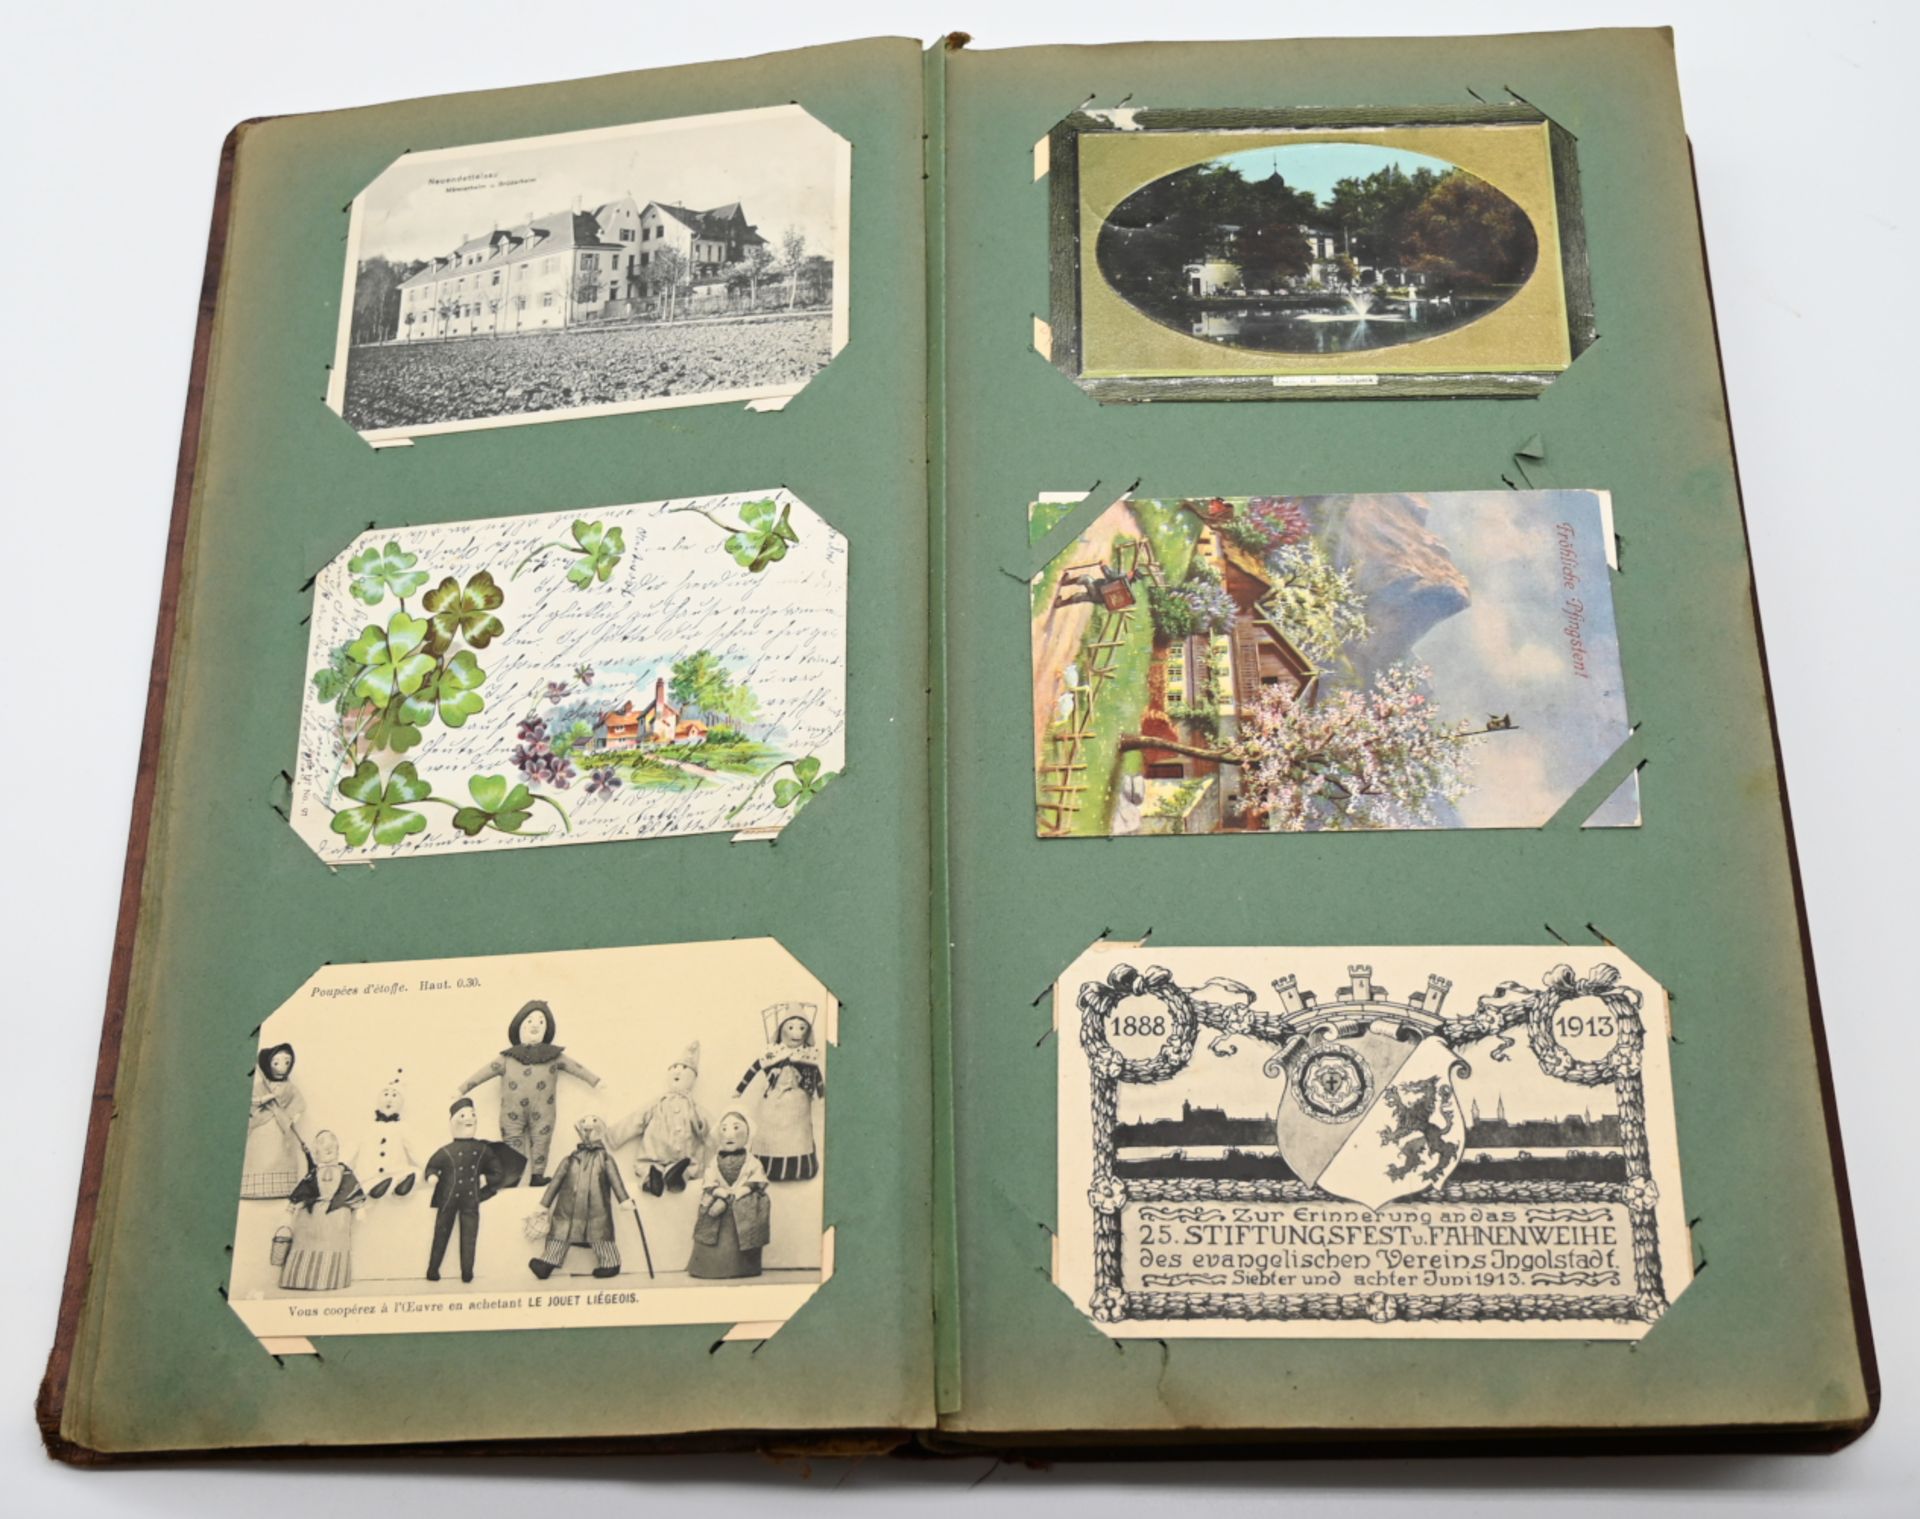 1 Fotoalbum Anfang 20. Jh. mit über 275 Ansichts-, Landschafts-, Militär- und Grußkarten aus der Zei - Image 3 of 4